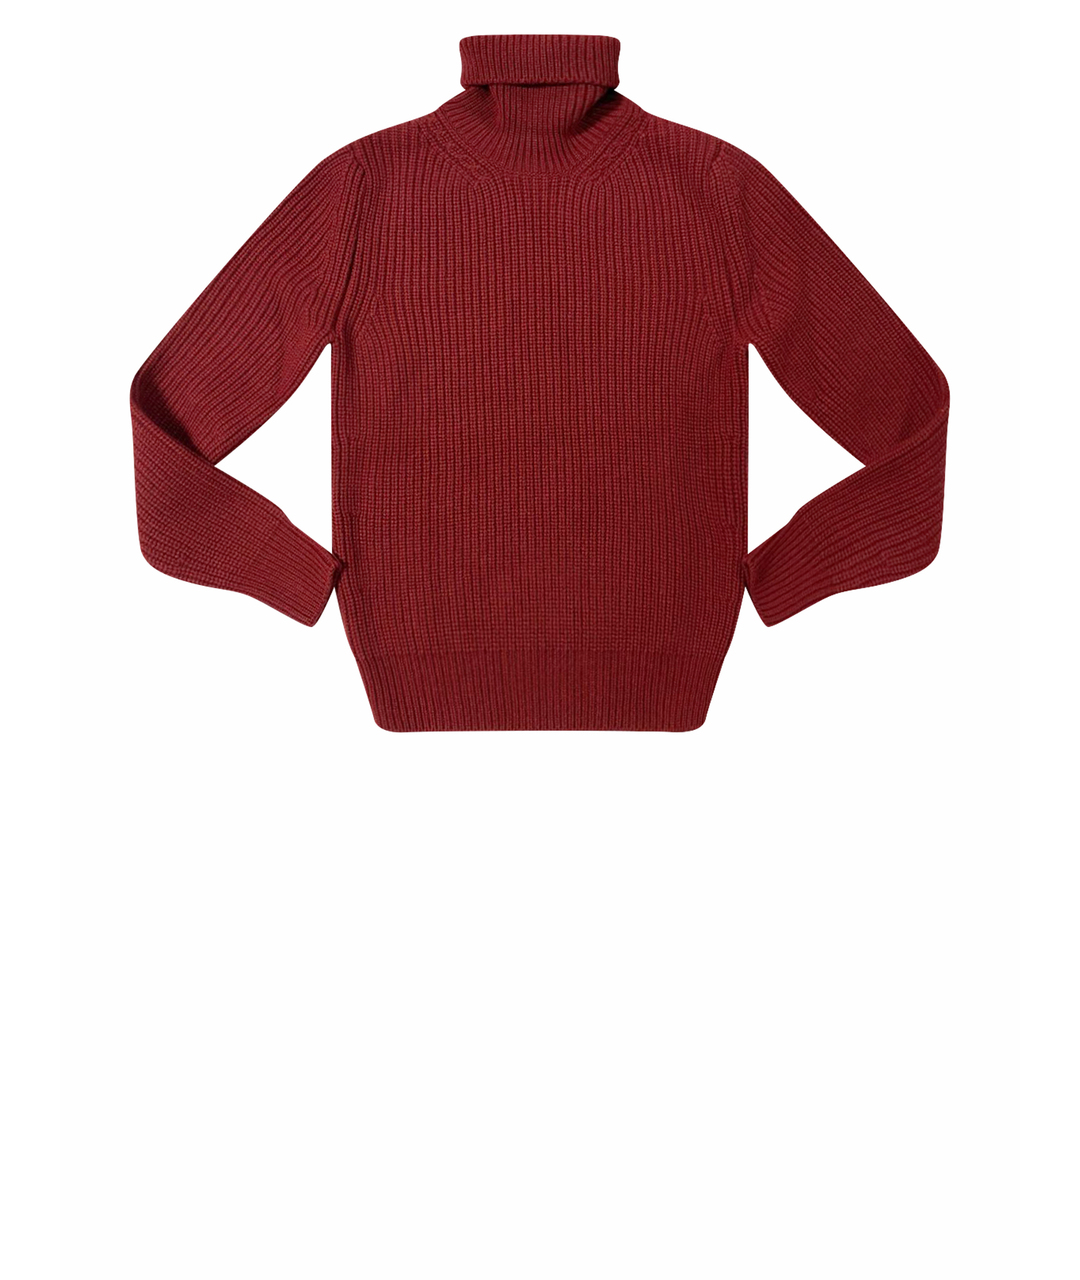 TOM FORD Бордовый кашемировый джемпер / свитер, фото 1